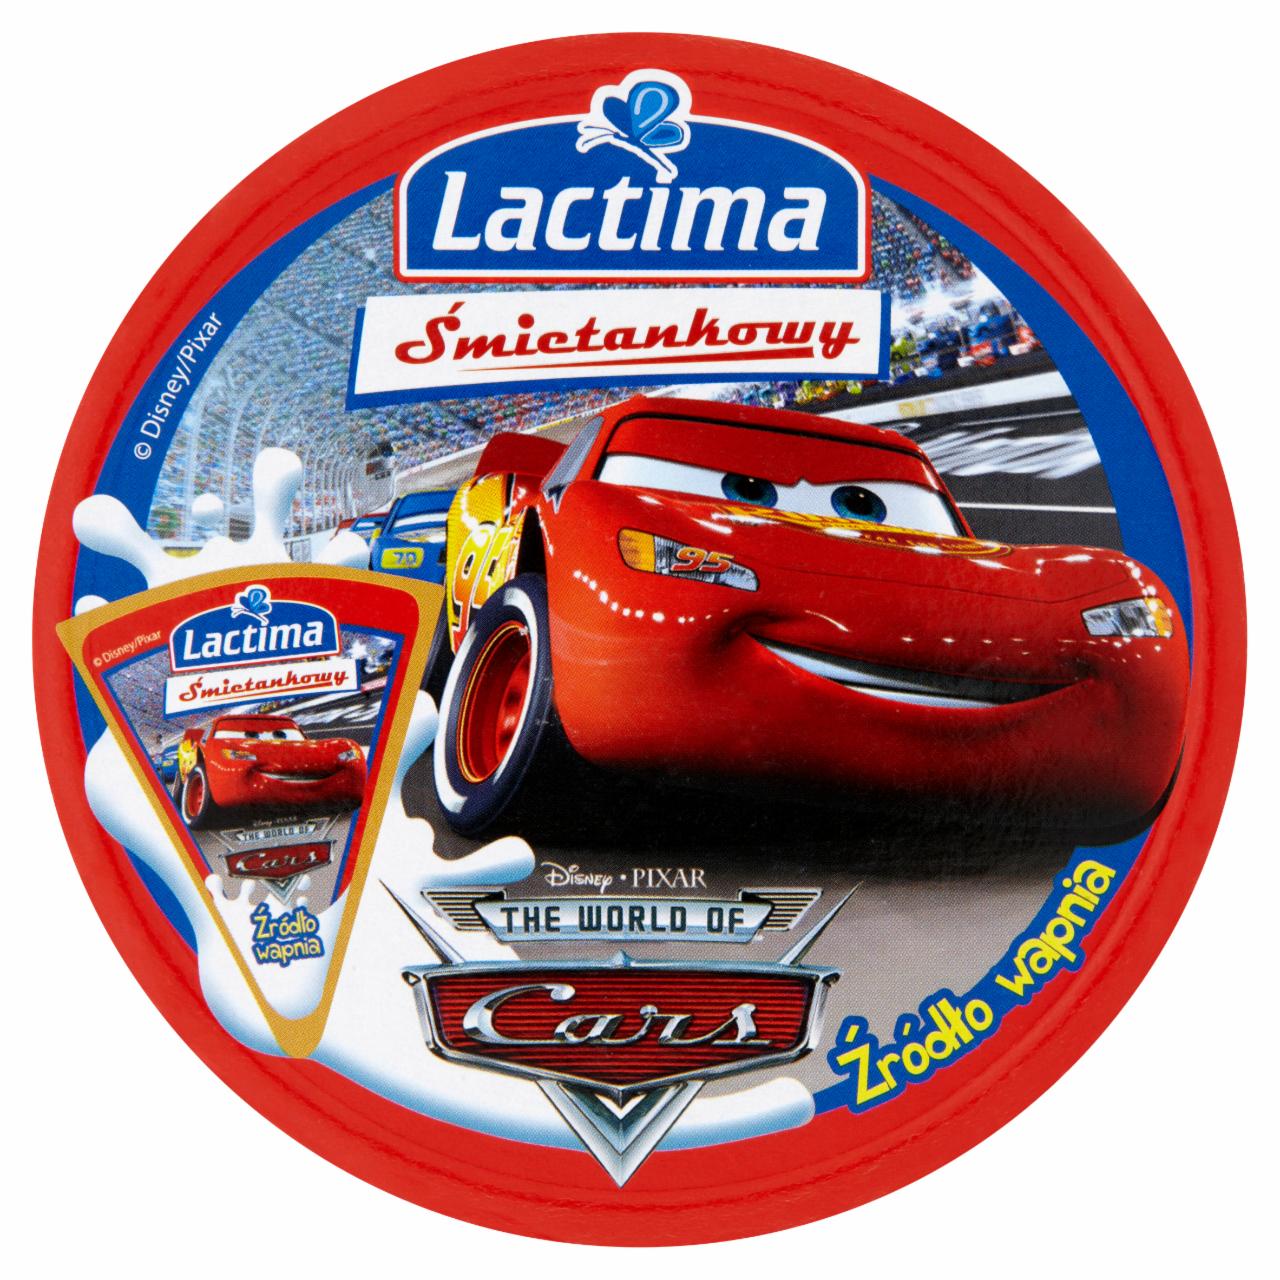 Képek - Lactima tejszínes kenhető sajt 140 g